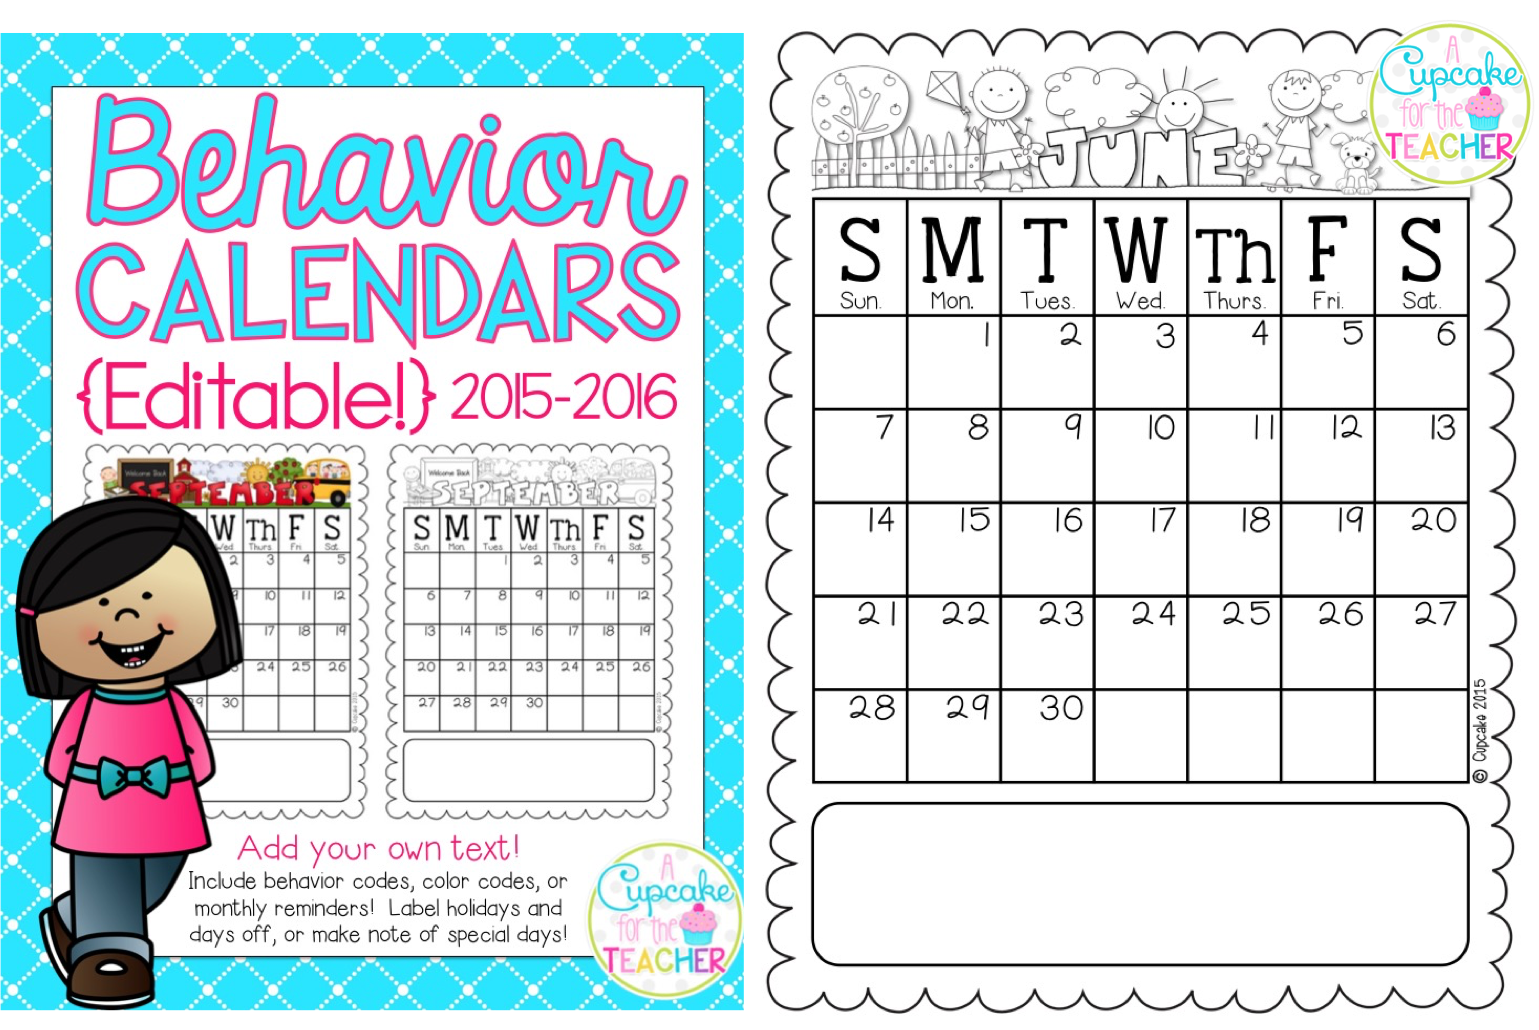 behavior-calendars-2015-2016-makeover-madness-a-cupcake-for-the